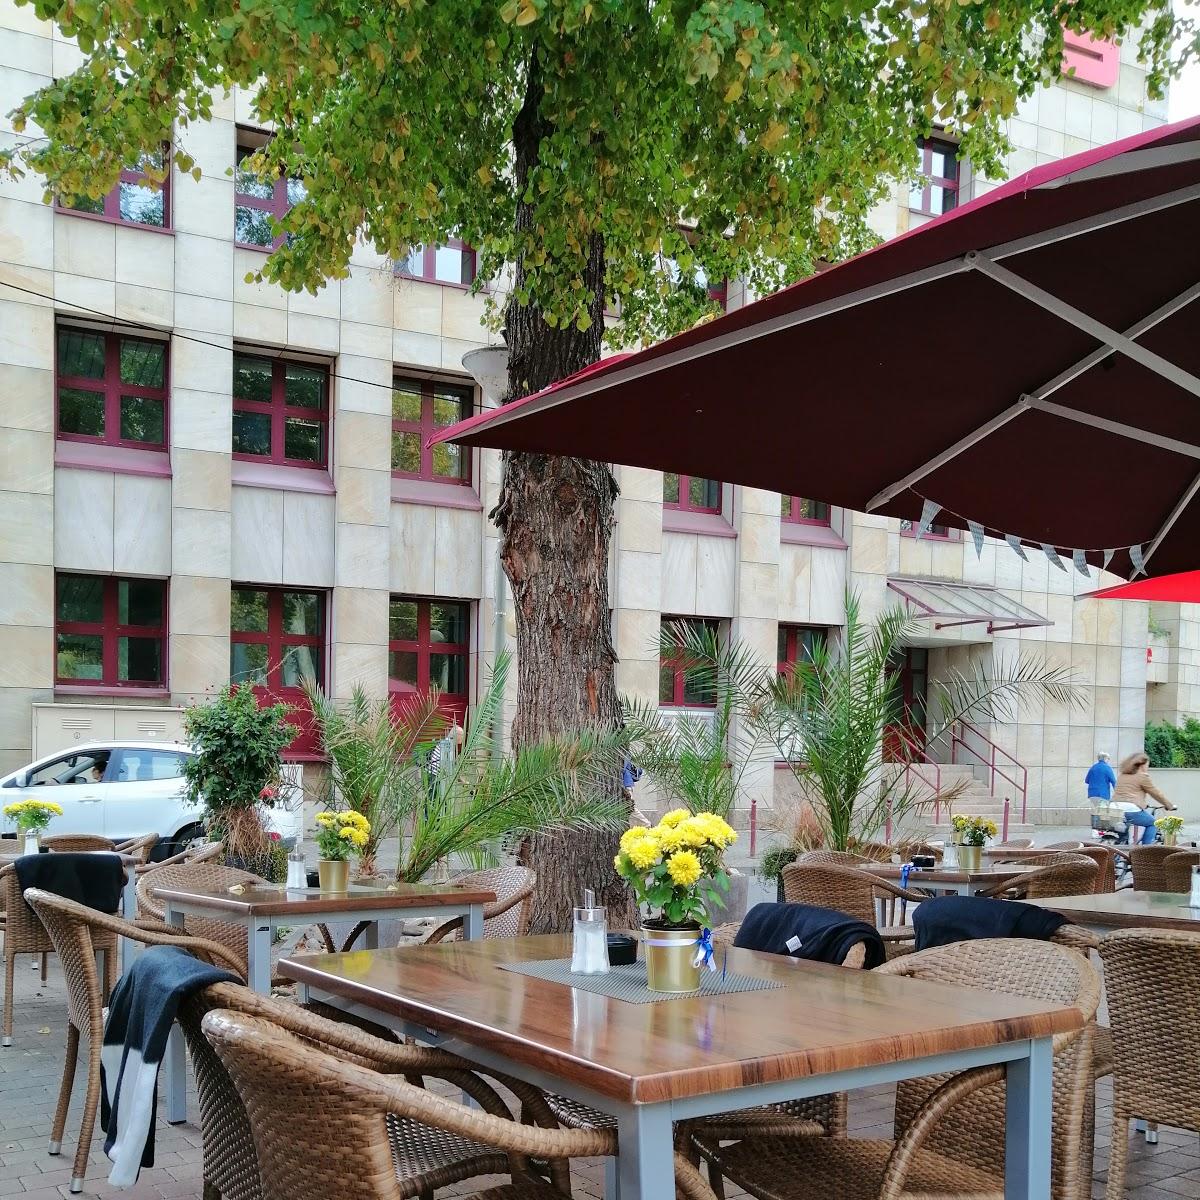 Restaurant "Restaurant Marinella" in  Kreuznach